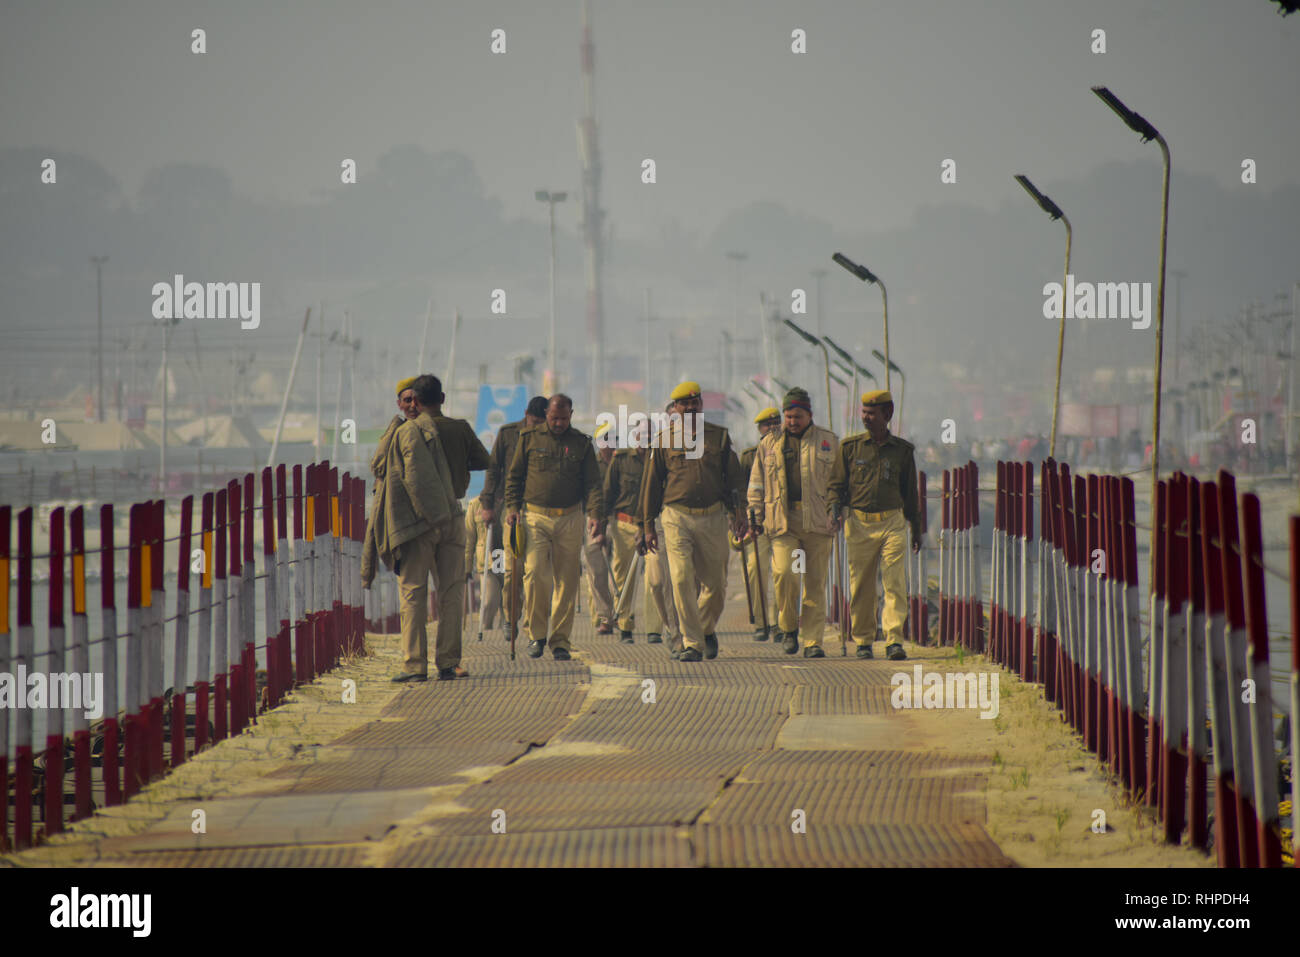 Polizisten gesehen, überqueren Sie die Brücke geschlossen während der Wallfahrt. Kumbh Mela, einer der größten Gemeinde des Menschen auf der Erde. 3 crore Leute werden erwartet am Tag der zweiten Shahi Snan am 4. Februar und Arrangements sind entsprechend in Prayagraj gemacht. Stockfoto